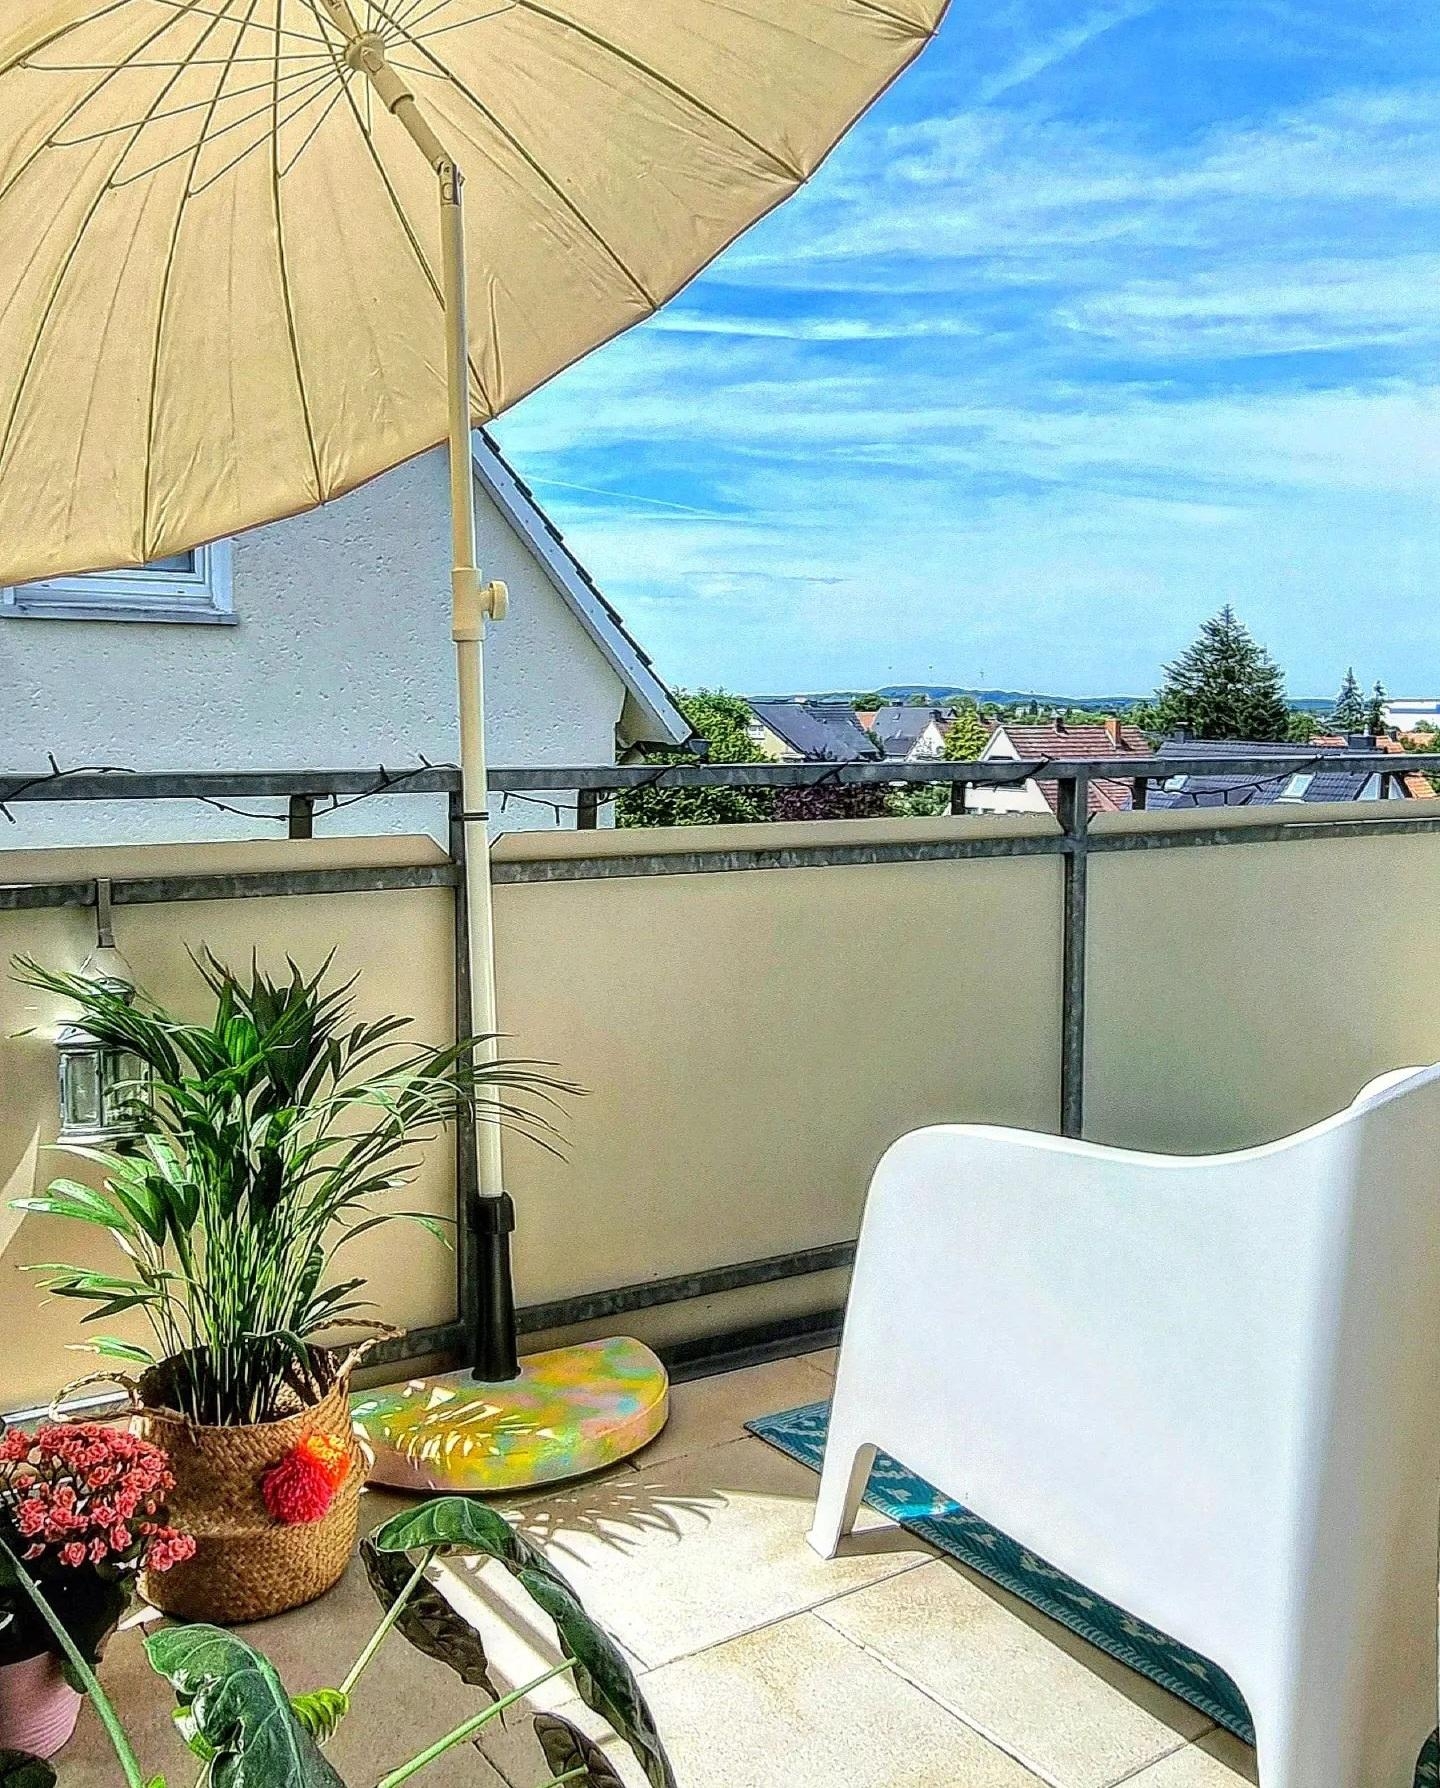 Genießt ihr heute auch so die #sonne #☀️ 😇? Zeit für #frühling #balkon #balkonien #diy #sonnenschirmständer #outdoor 